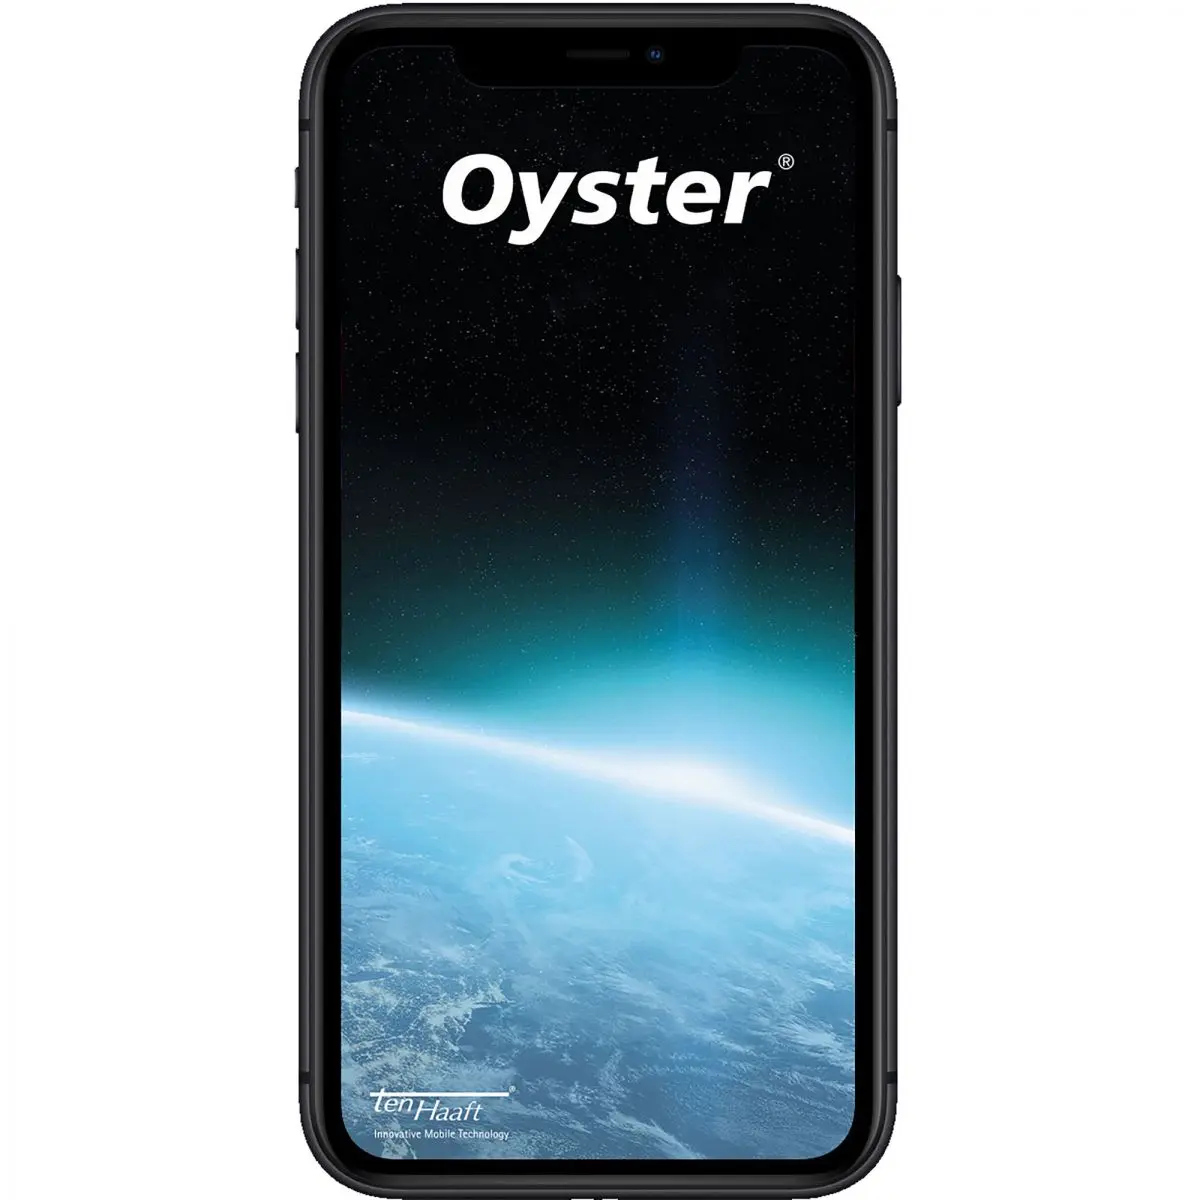 Satelitný systém Oyster Vision 85 Single